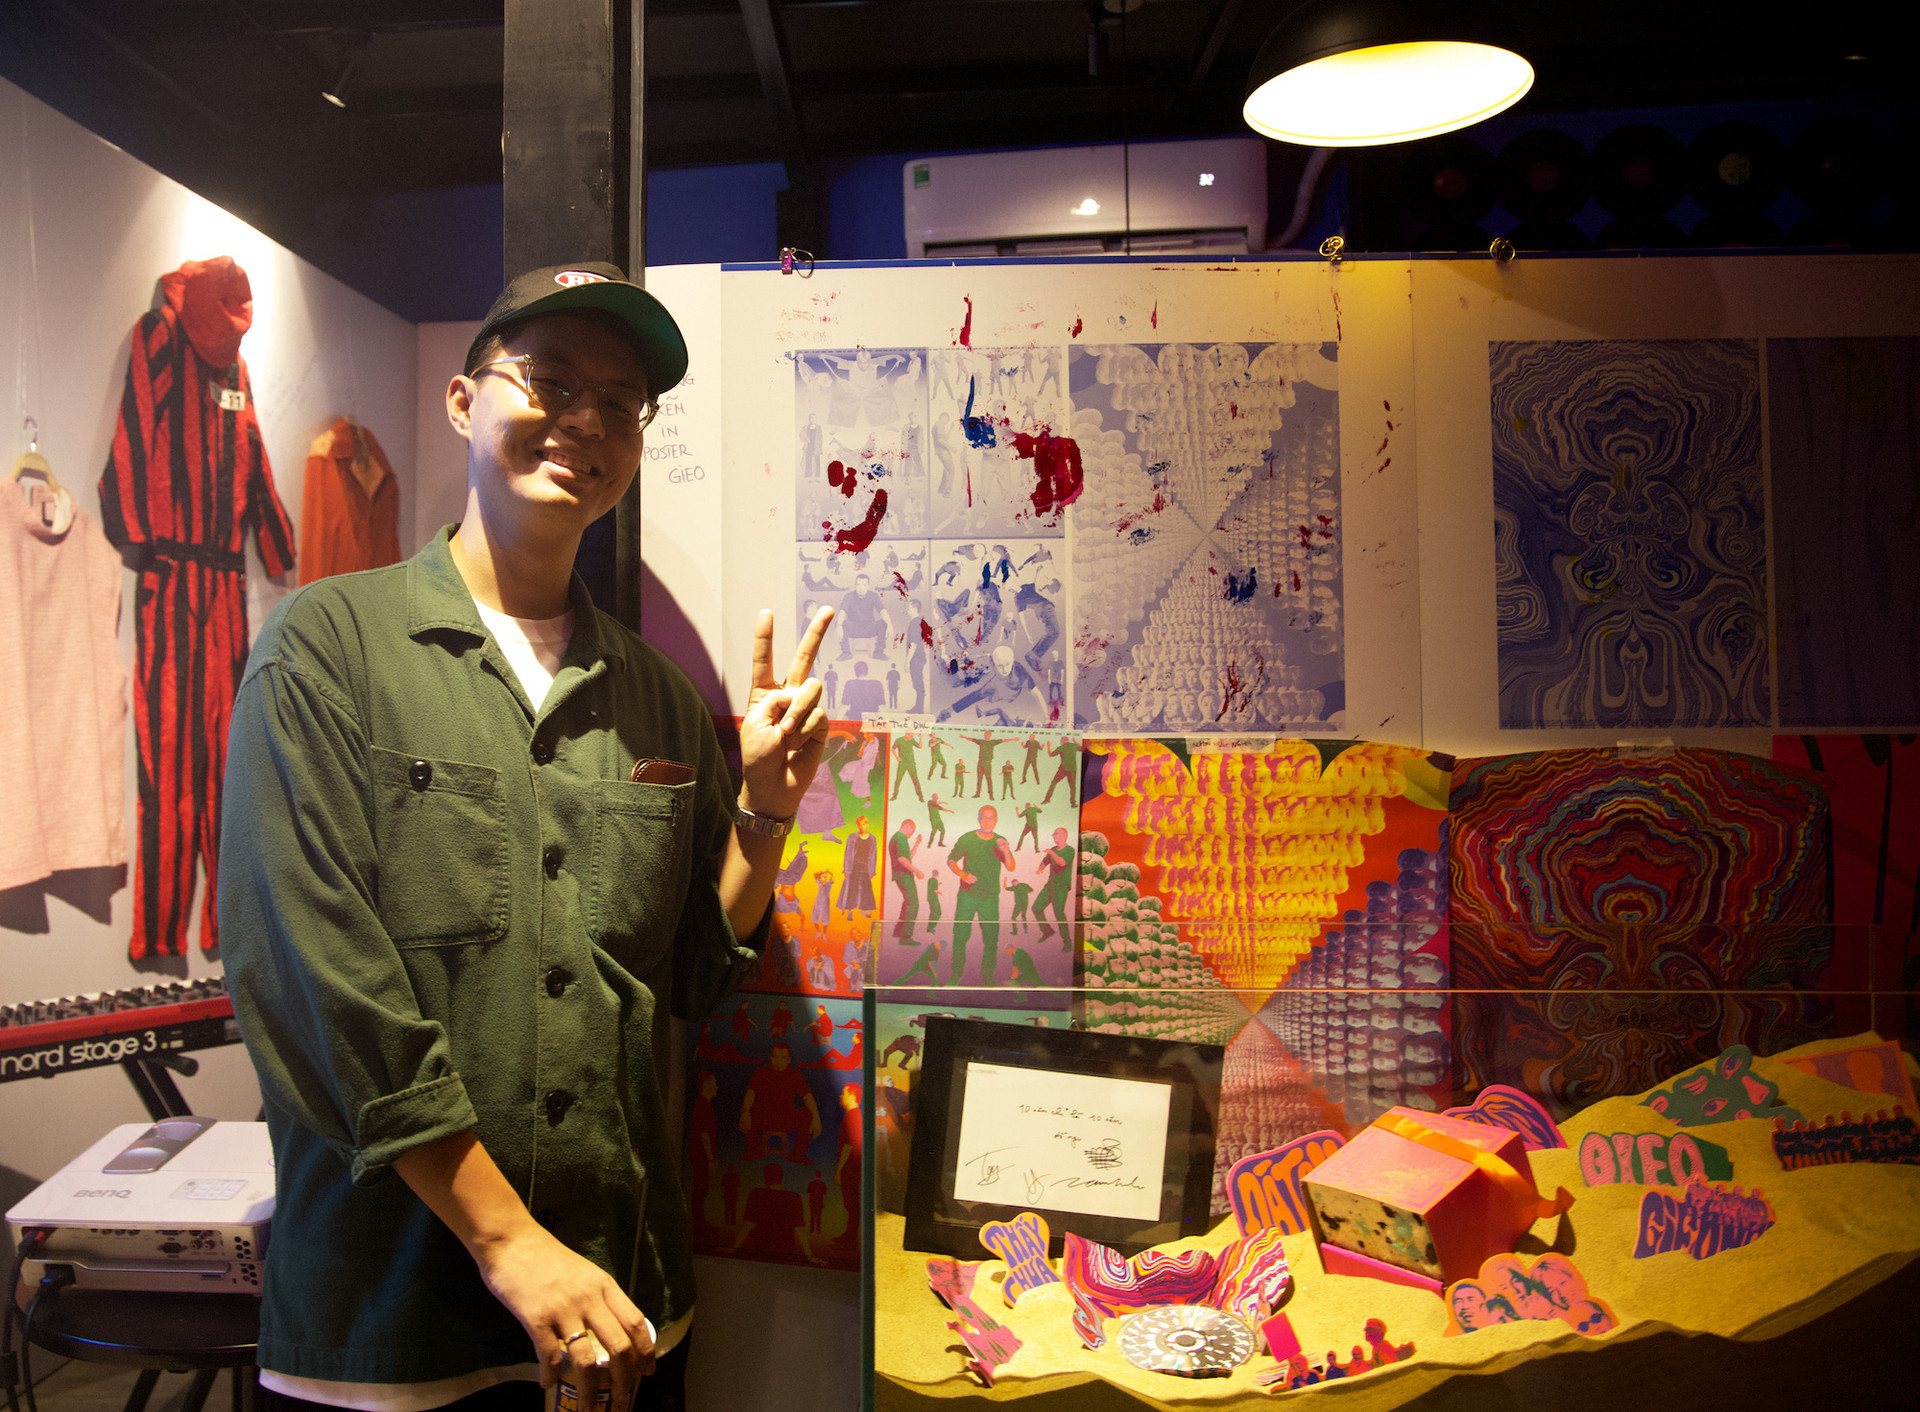 Nghệ sĩ, giám đốc sáng tạo Duy Đào bên thiết kế của anh cho album Gieo của Ngọt - Ảnh: NGỌC THẮNG